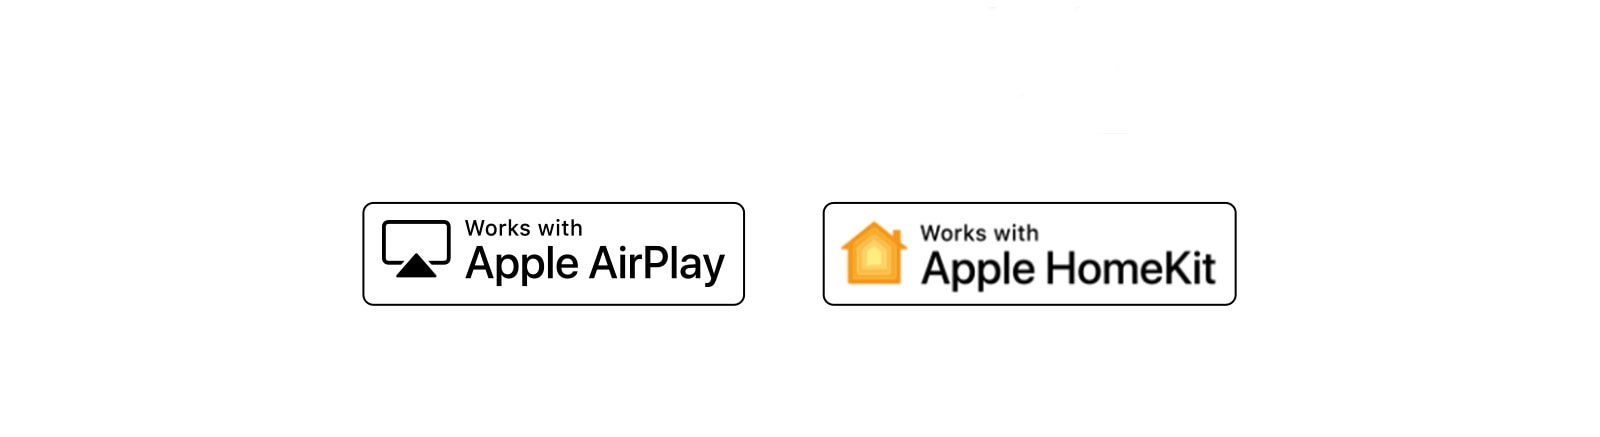 Hay cuatro logotipos desplazados en orden: Hola Google, Alexa incorporado, funciona con Apple AirPlay, funciona con Apple HomeKit.